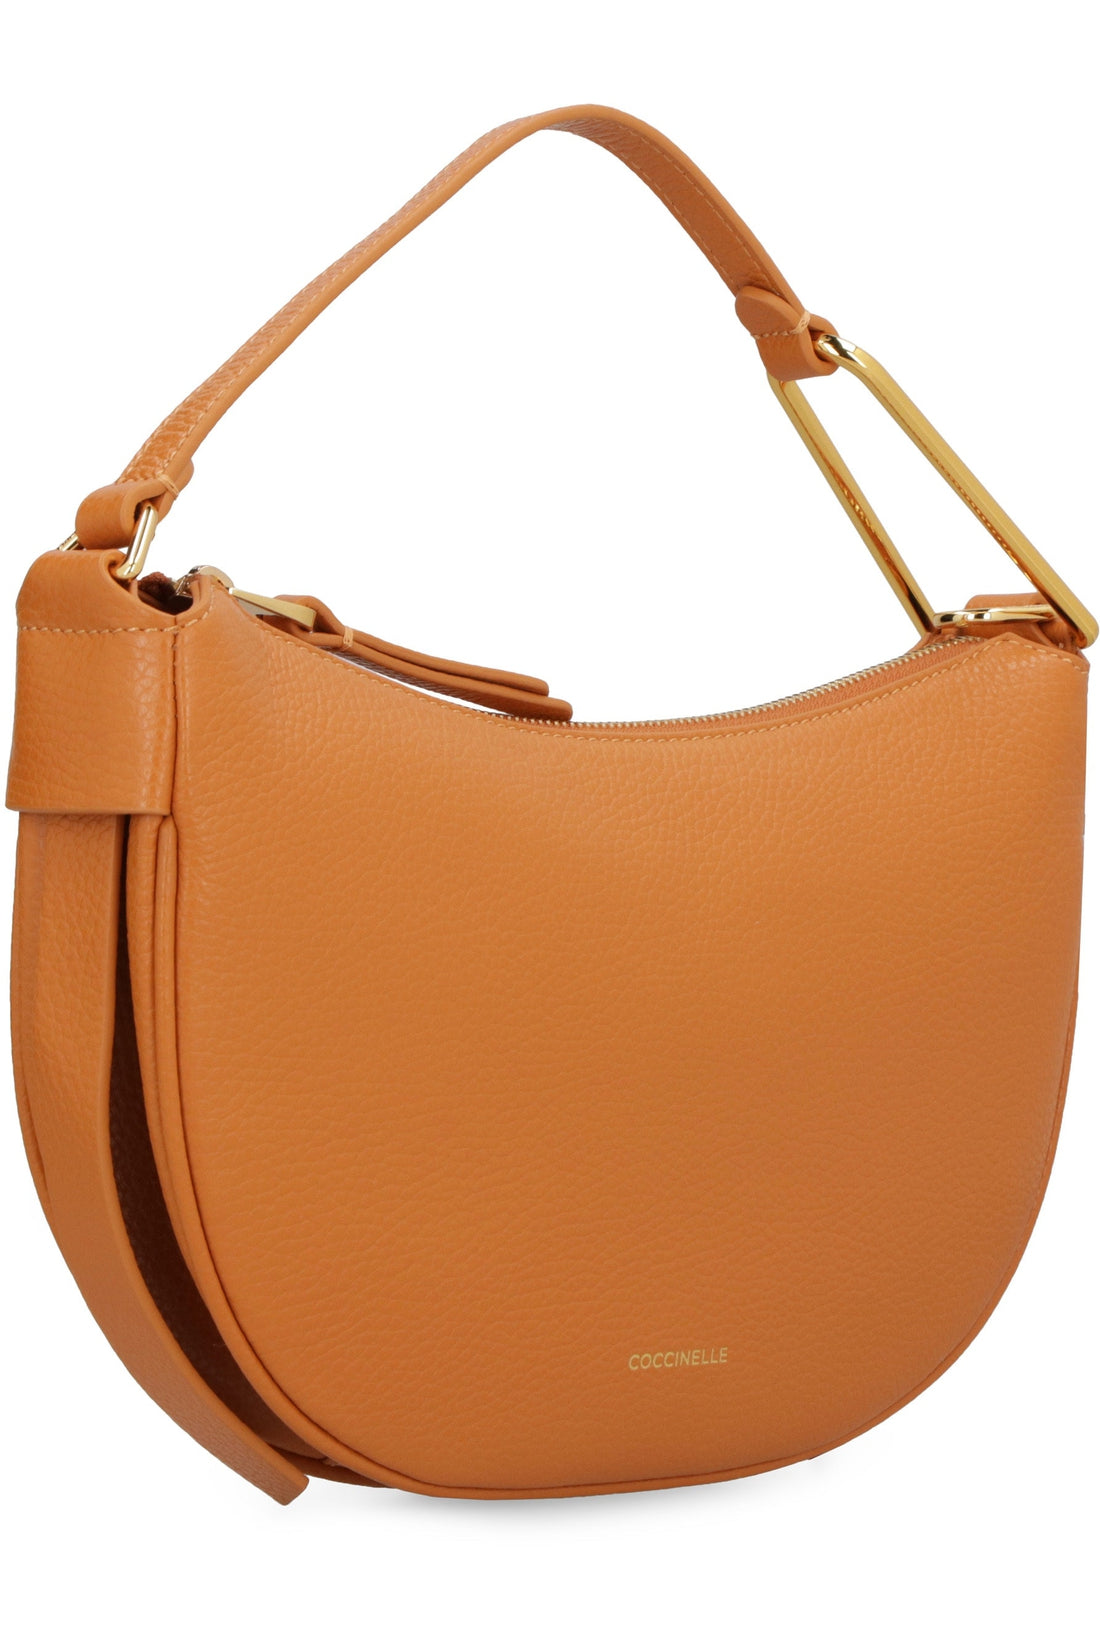 Coccinelle-OUTLET-SALE-Priscilla leather shoulder bag-ARCHIVIST